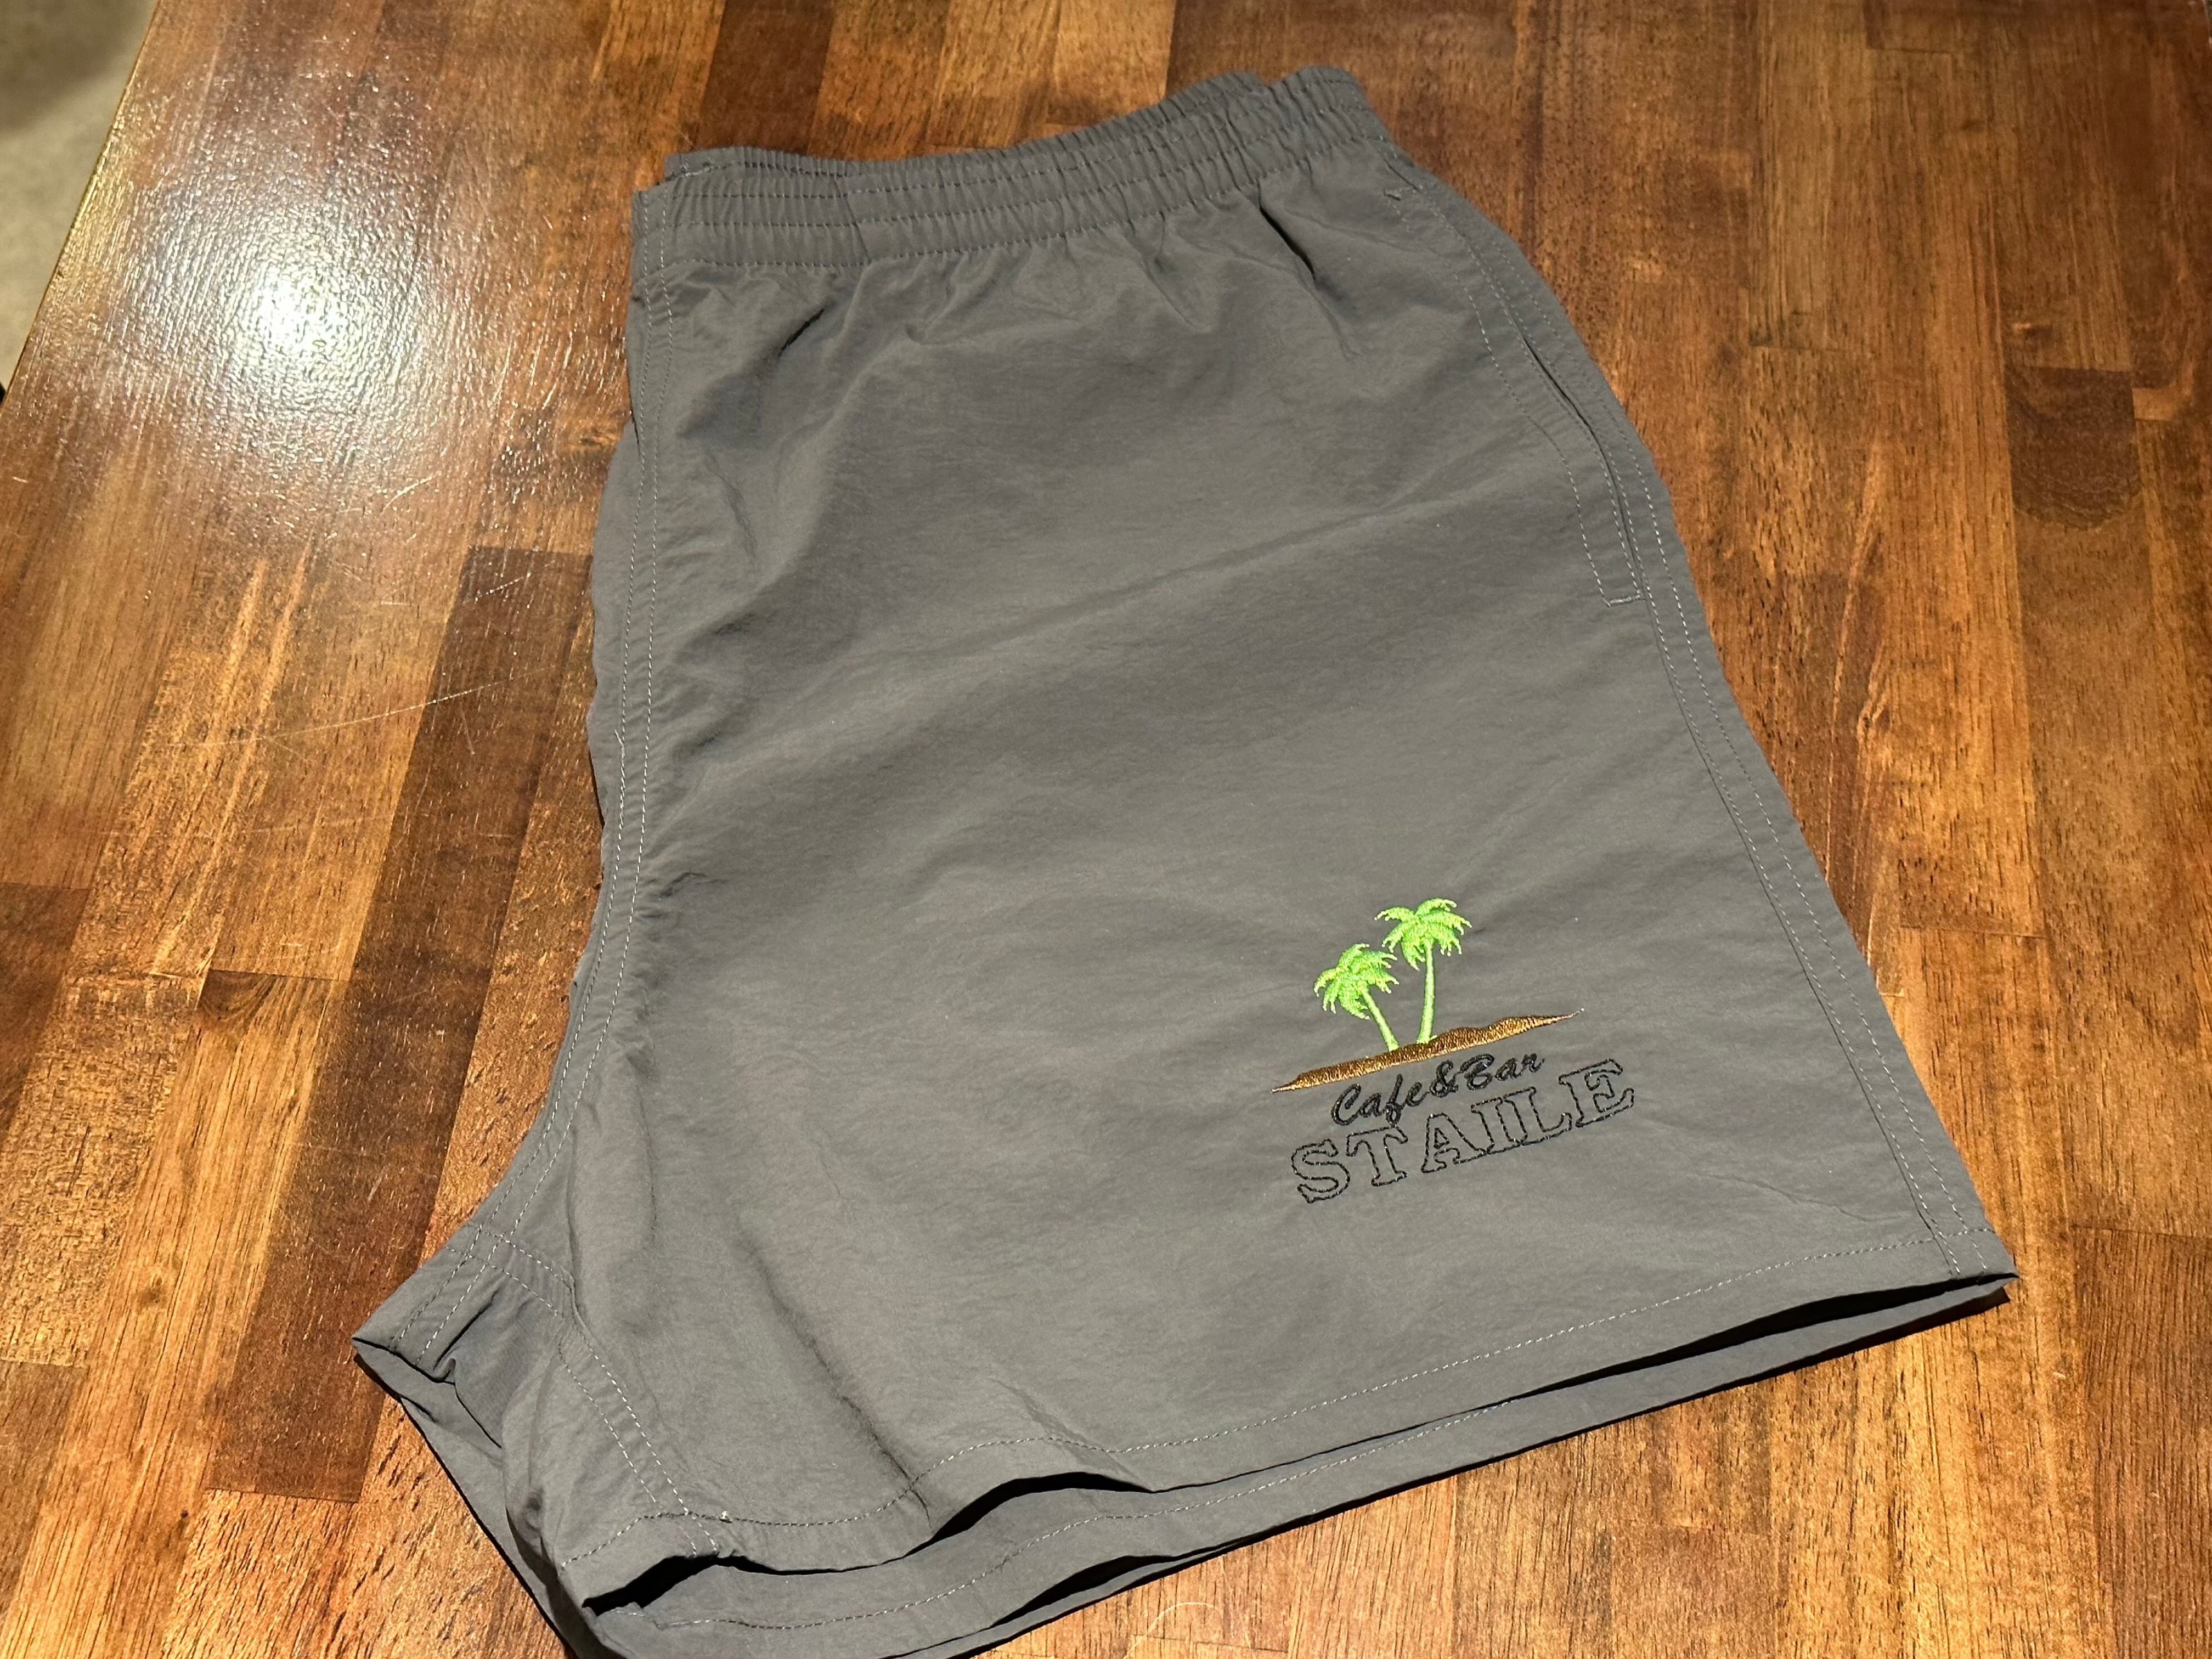 Embroidery Athletic shorts <BR>エンブロイダリーアスレチックショーツ